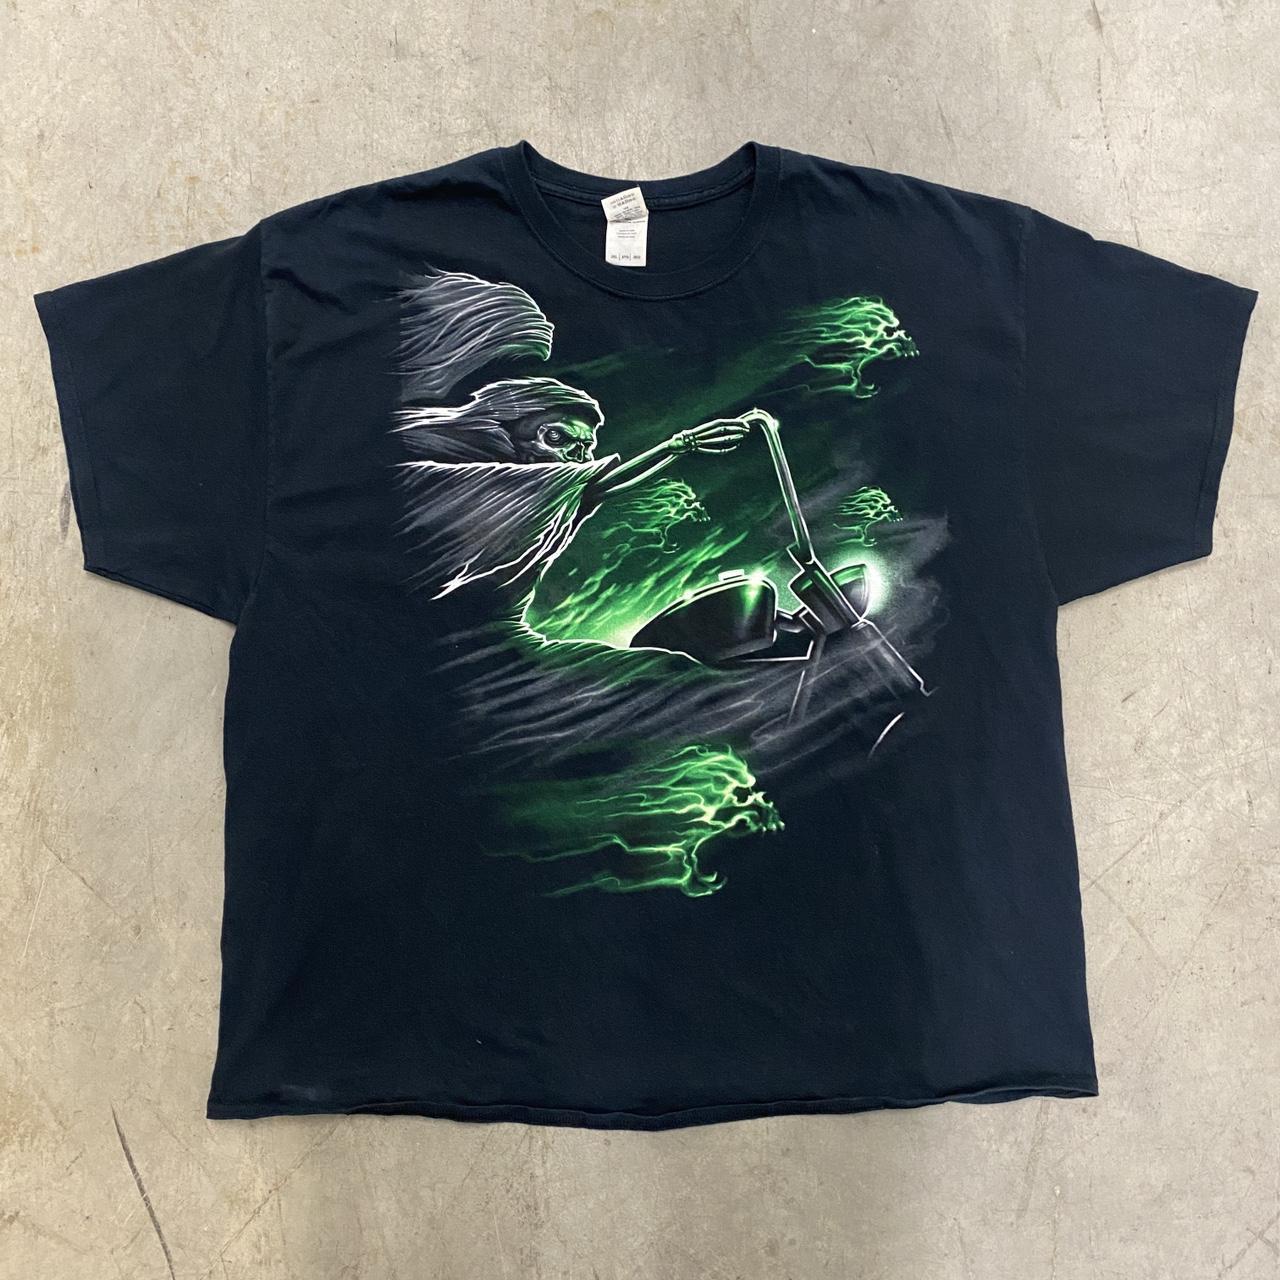 Vintage Y2K Green Grim Motorcycle Rider T-shirt •... - Depop